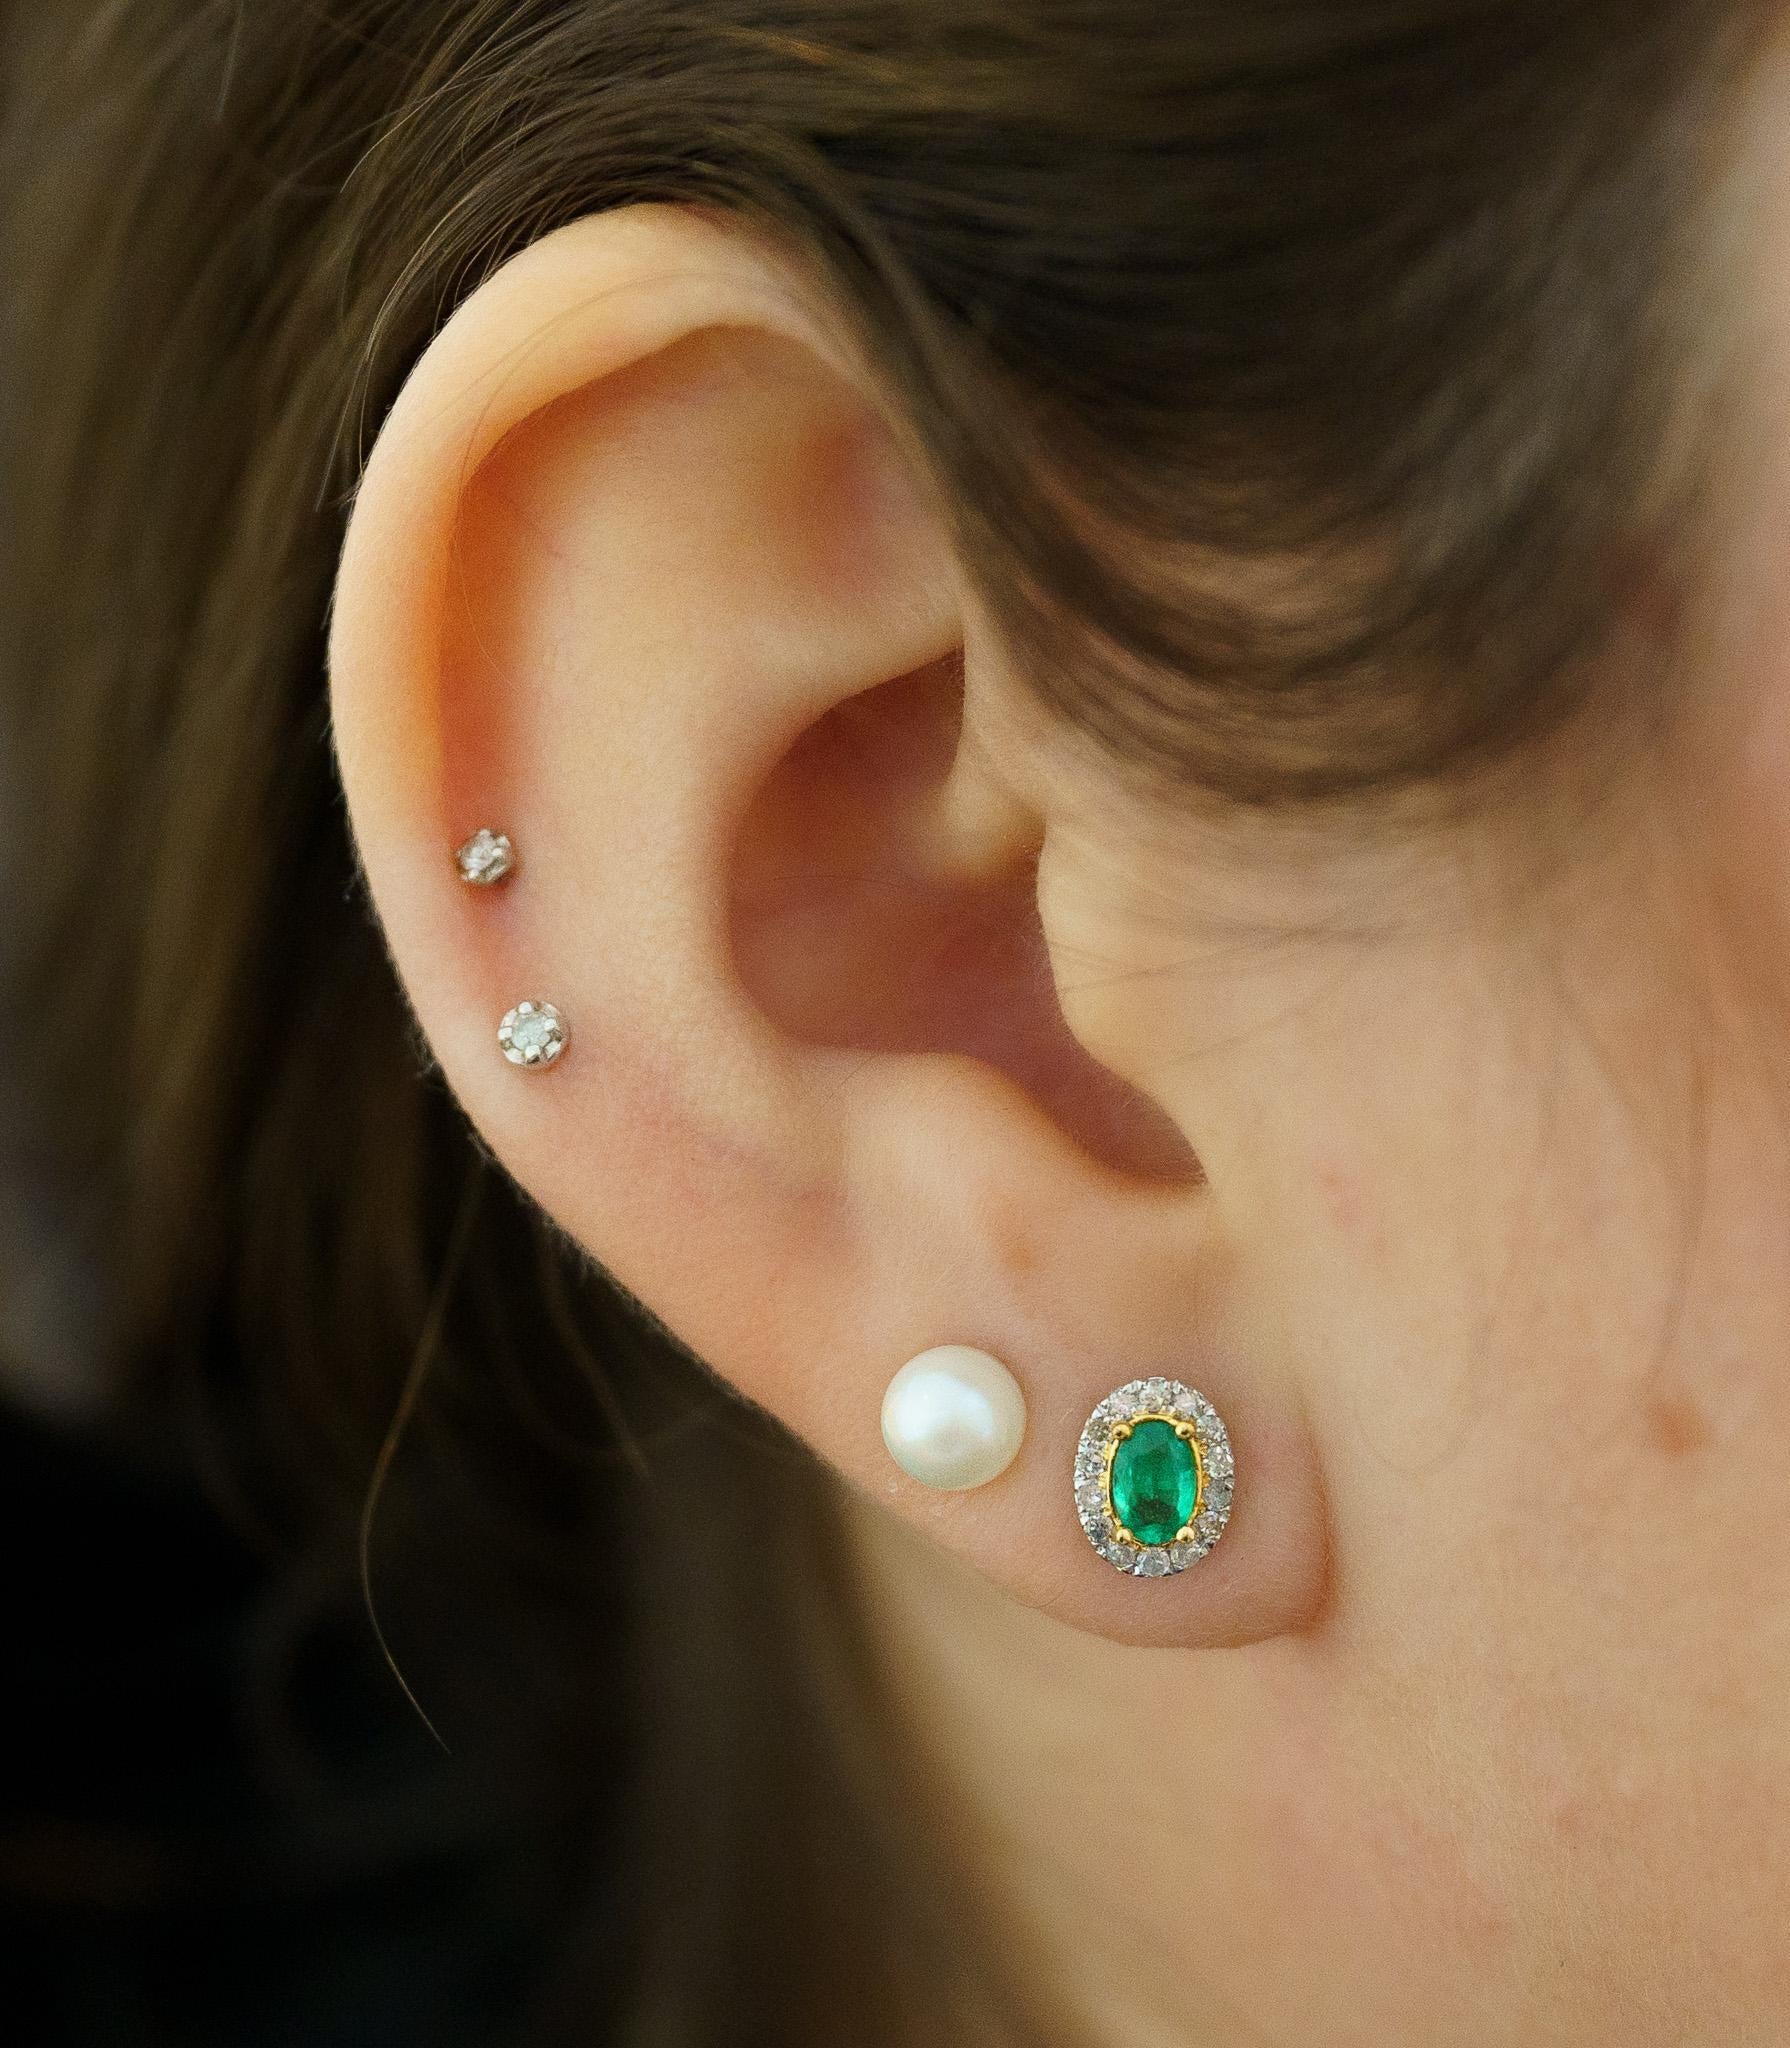 Women's 1 Carat 5mm Oval Emerald & Diamond Halo Stud Earrings in 18k White Gold For Sale